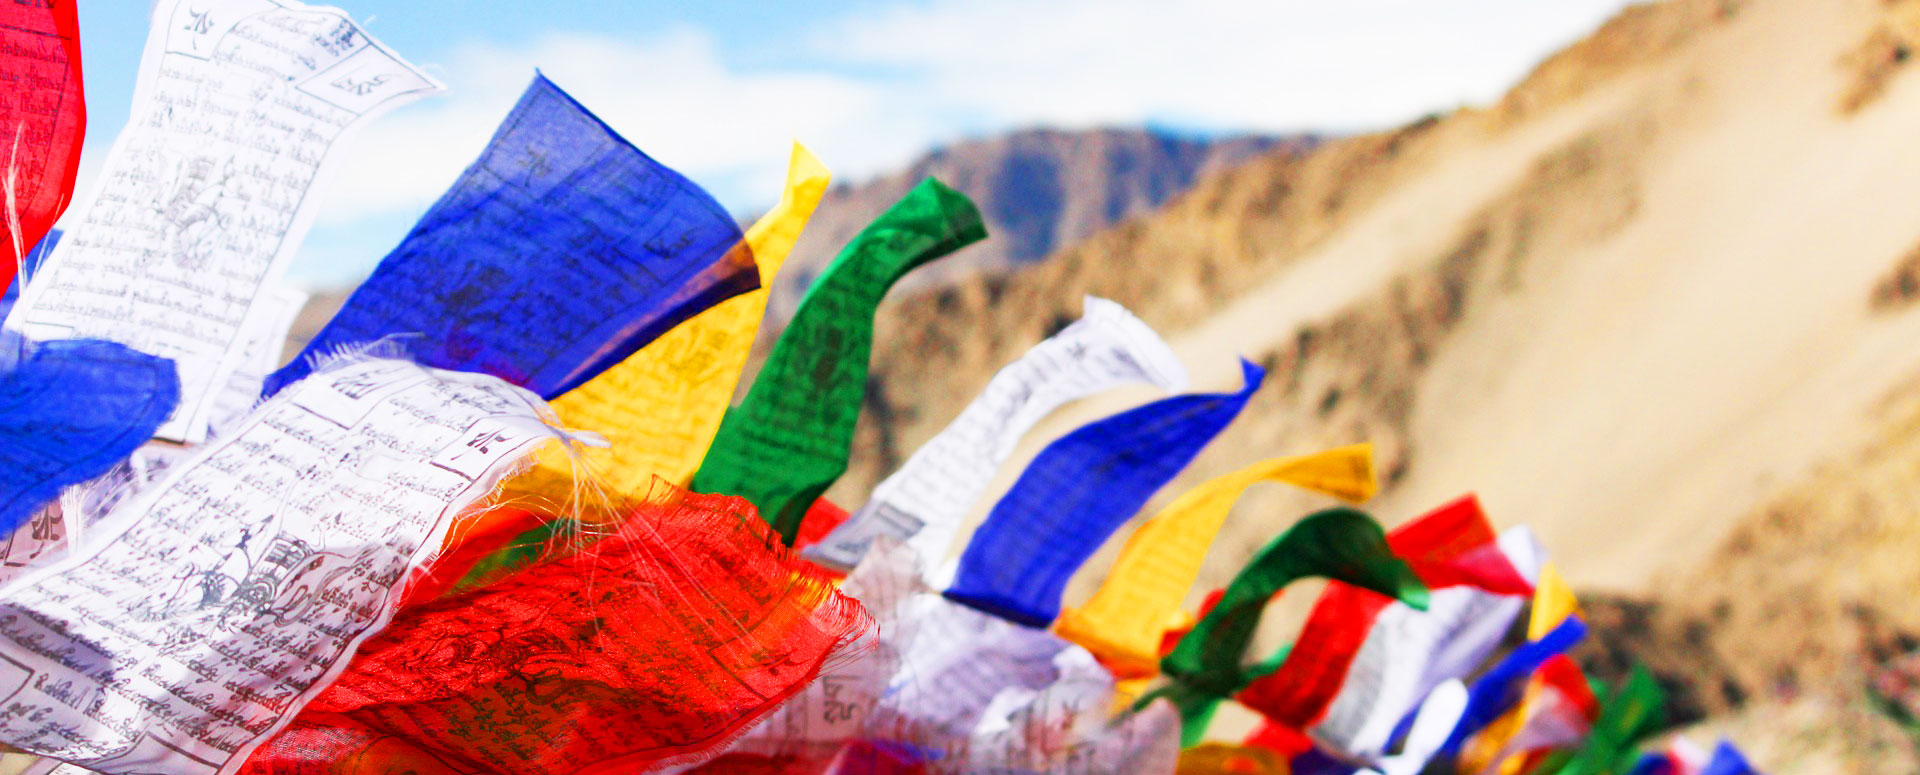 Ladakh-Himalayan-Landscape-Photography-Tour